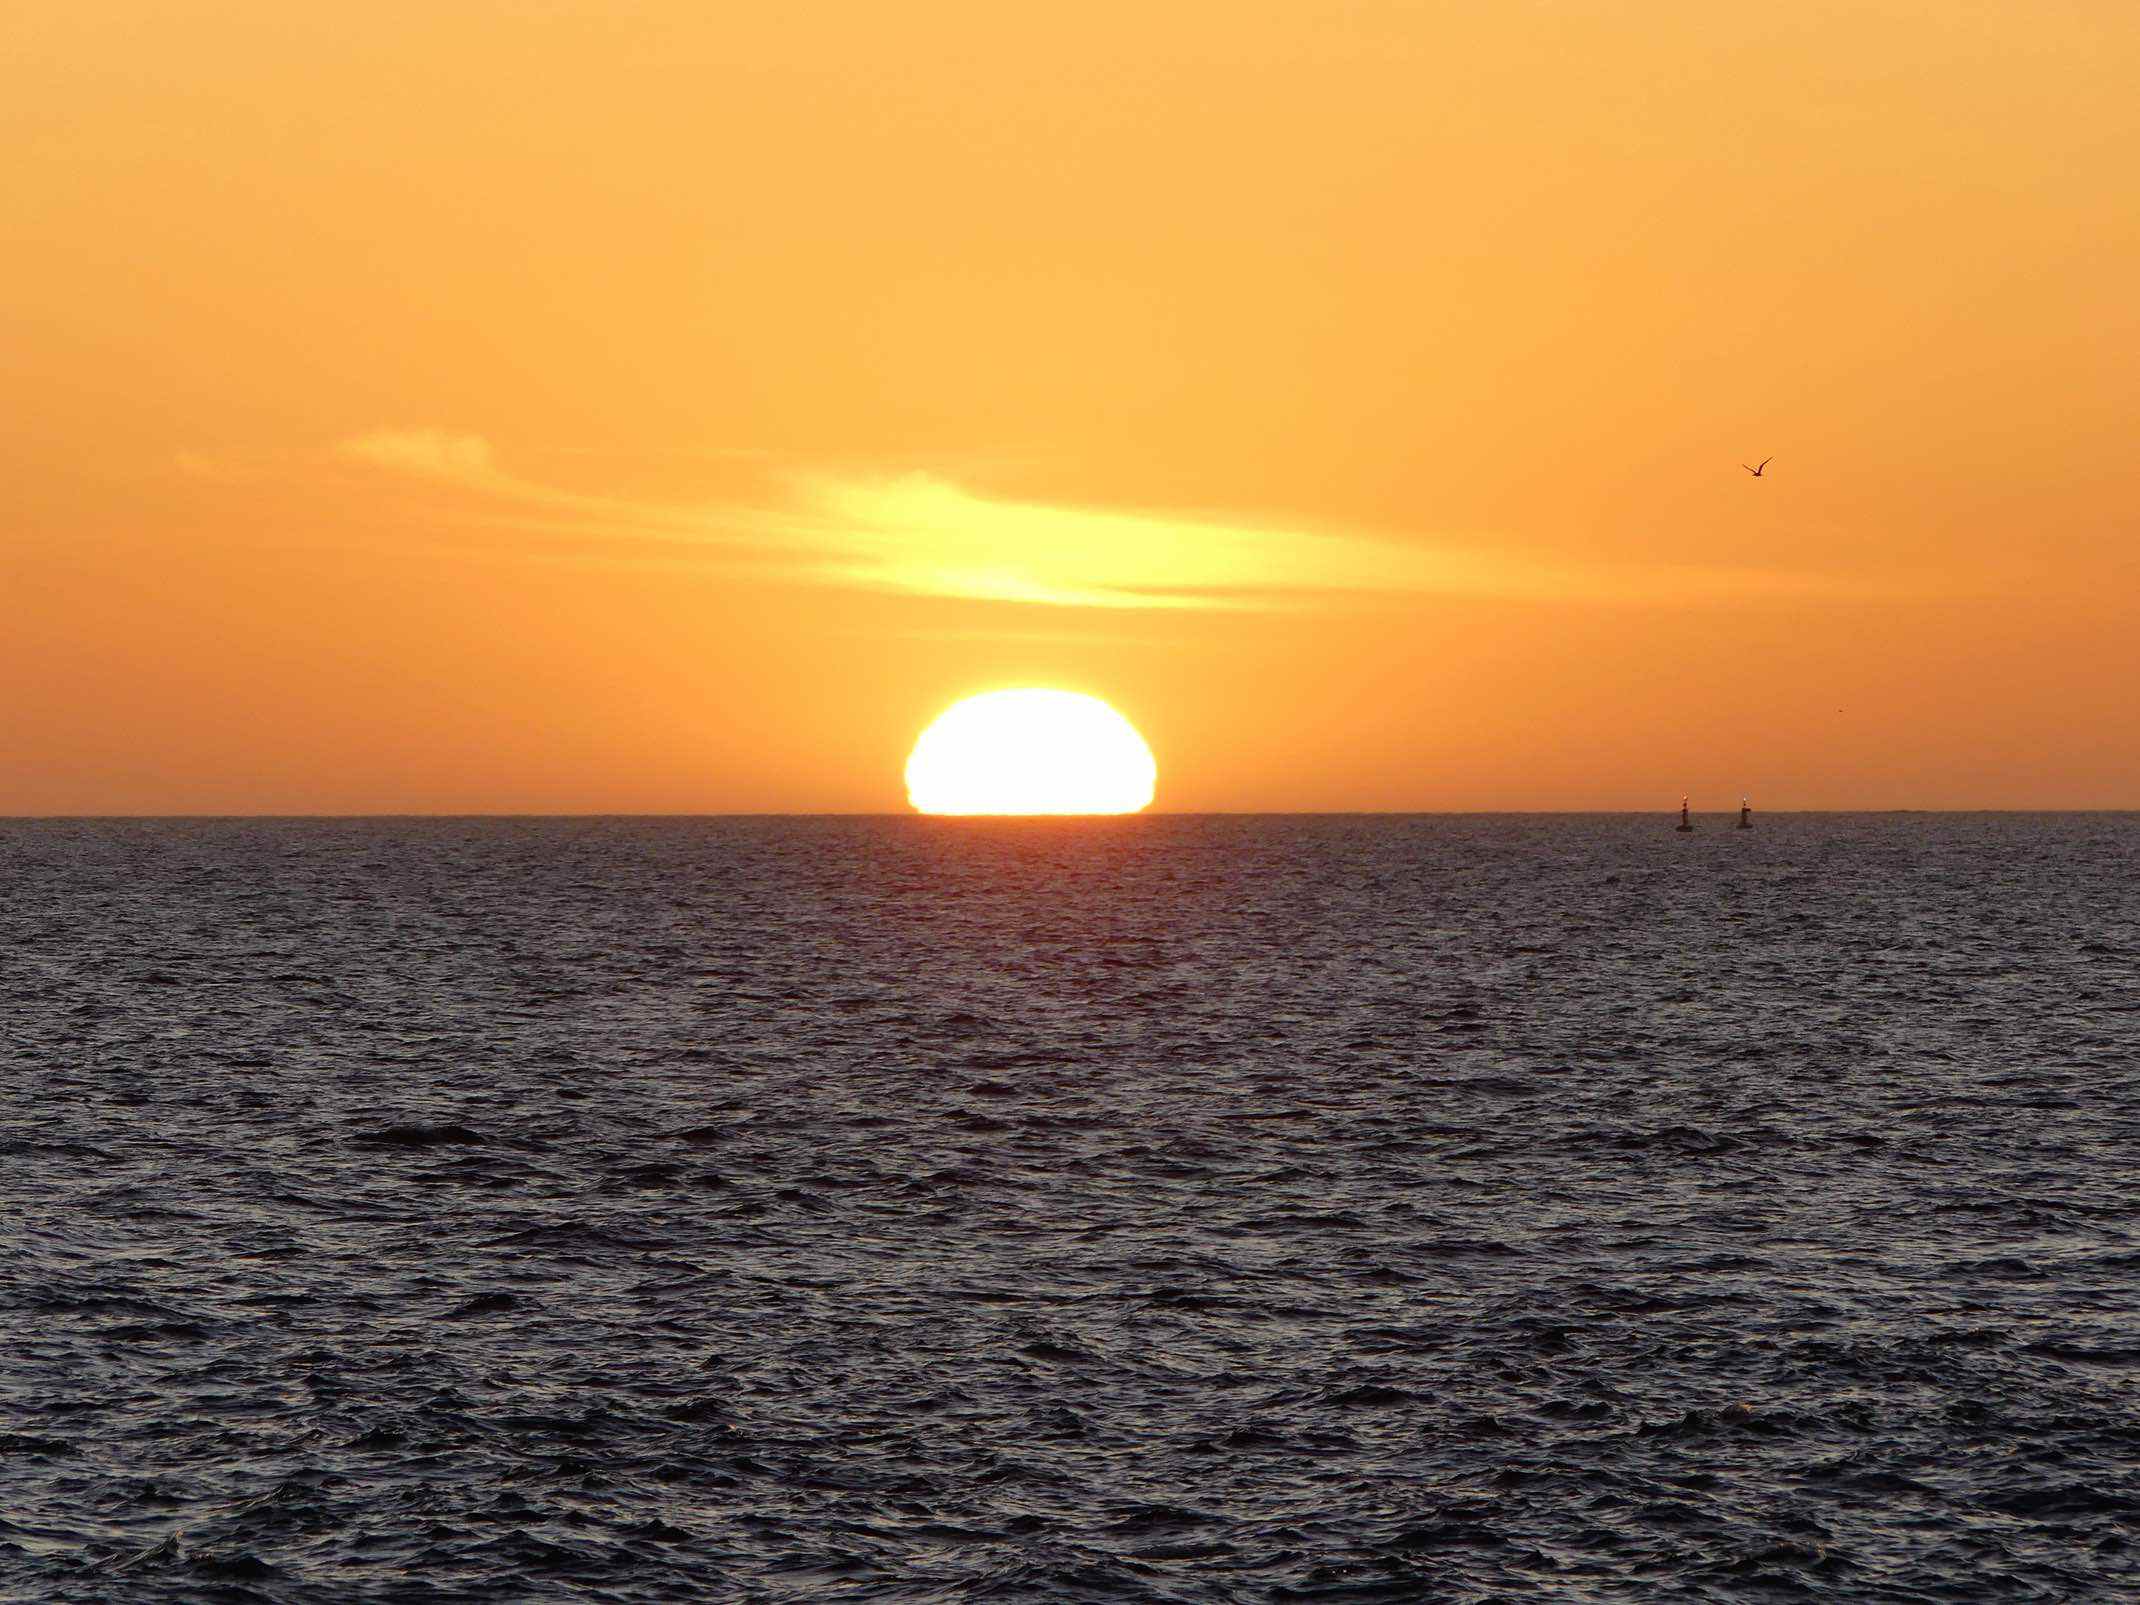 Sun setting over the ocean